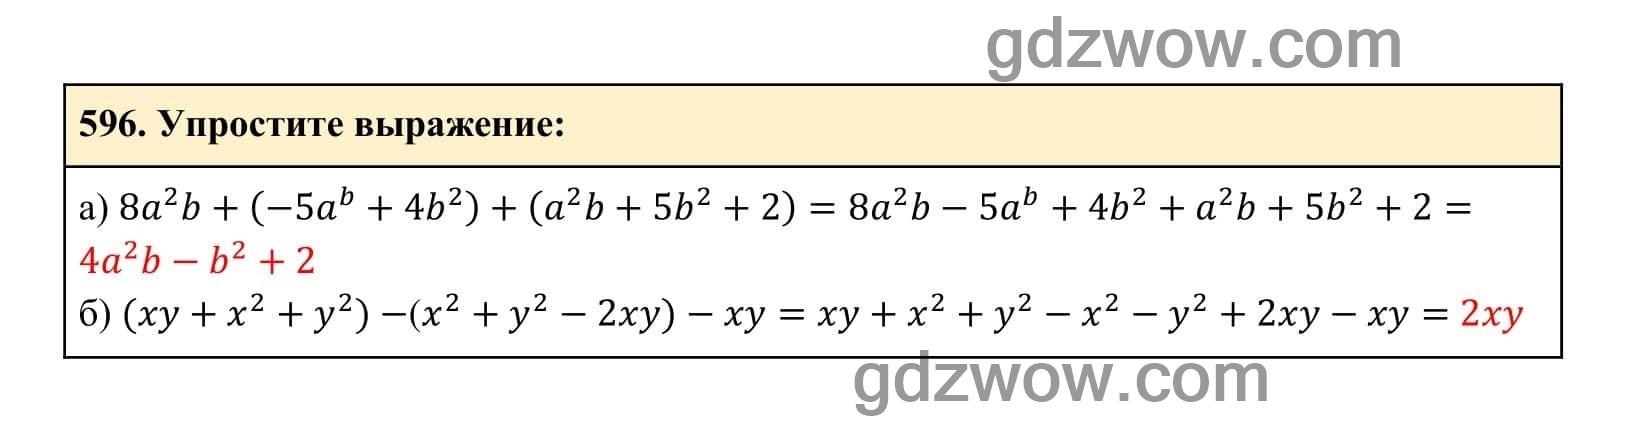 Упражнение 596 - ГДЗ по Алгебре 7 класс Учебник Макарычев (решебник) - GDZwow